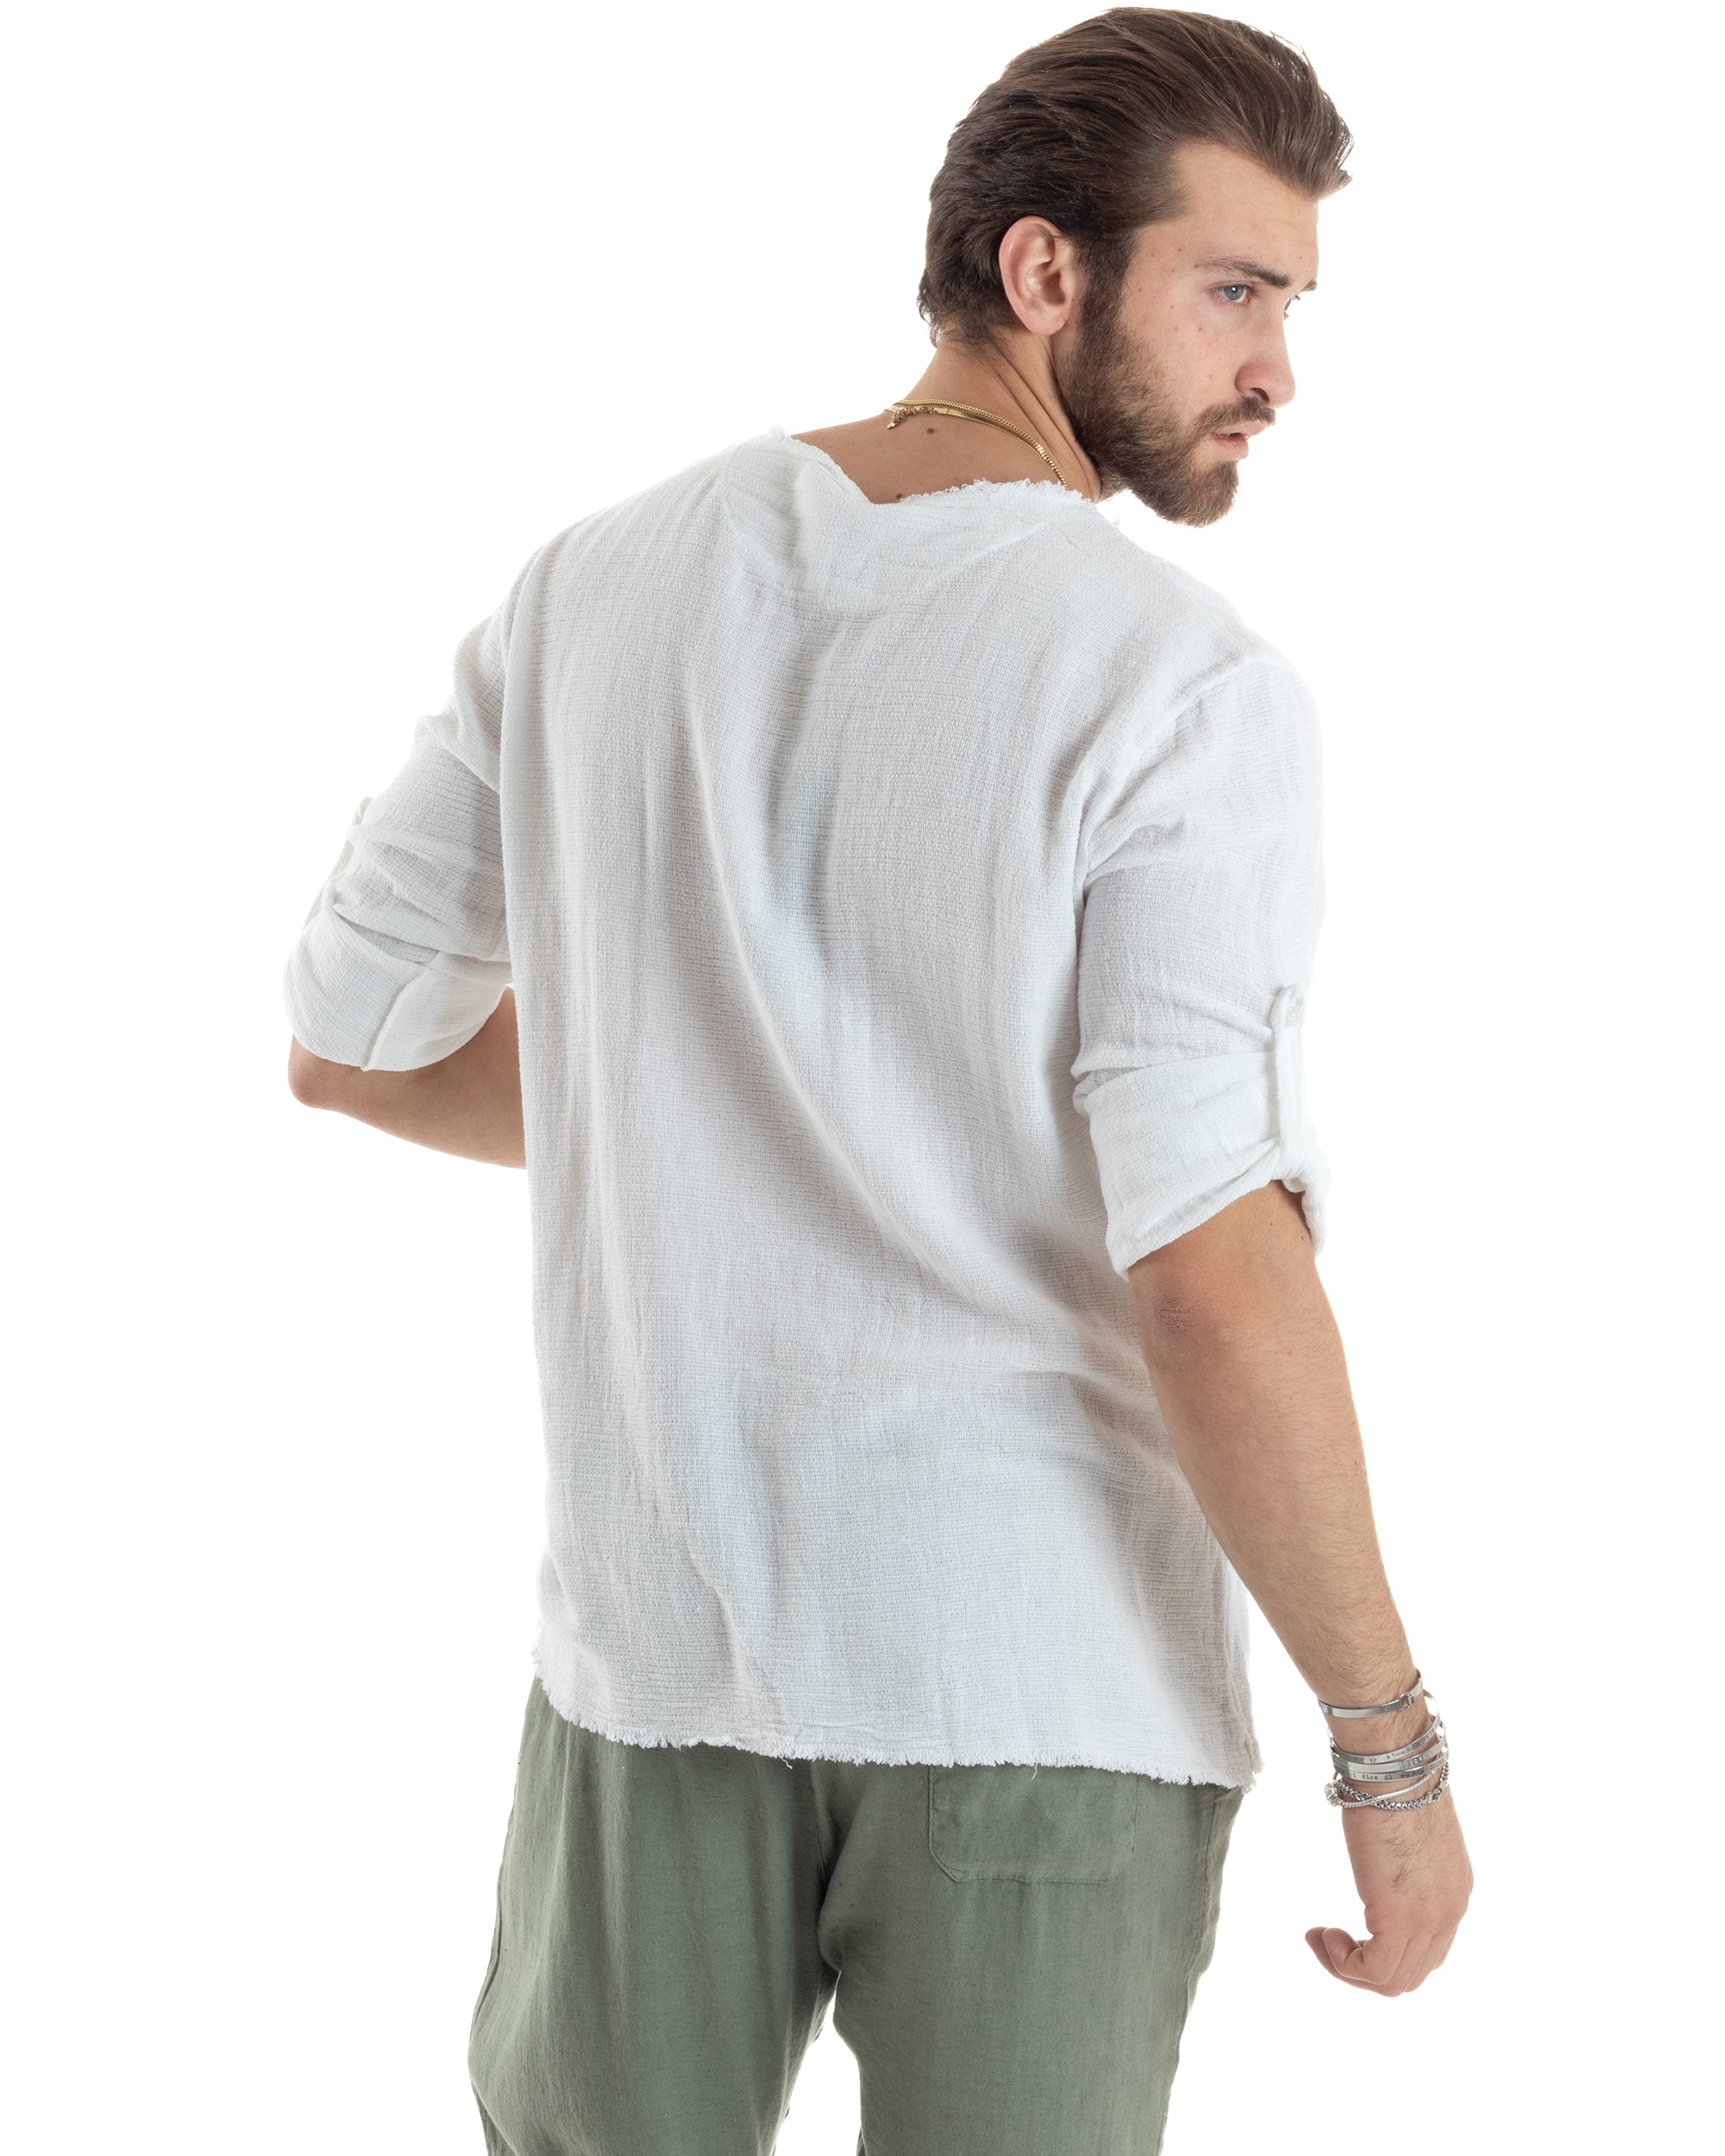 Camicia Uomo Manica Lunga Casacca Cotone Lino Scollo V Sfrangiata Regular Fit Bianco GIOSAL-C2846A